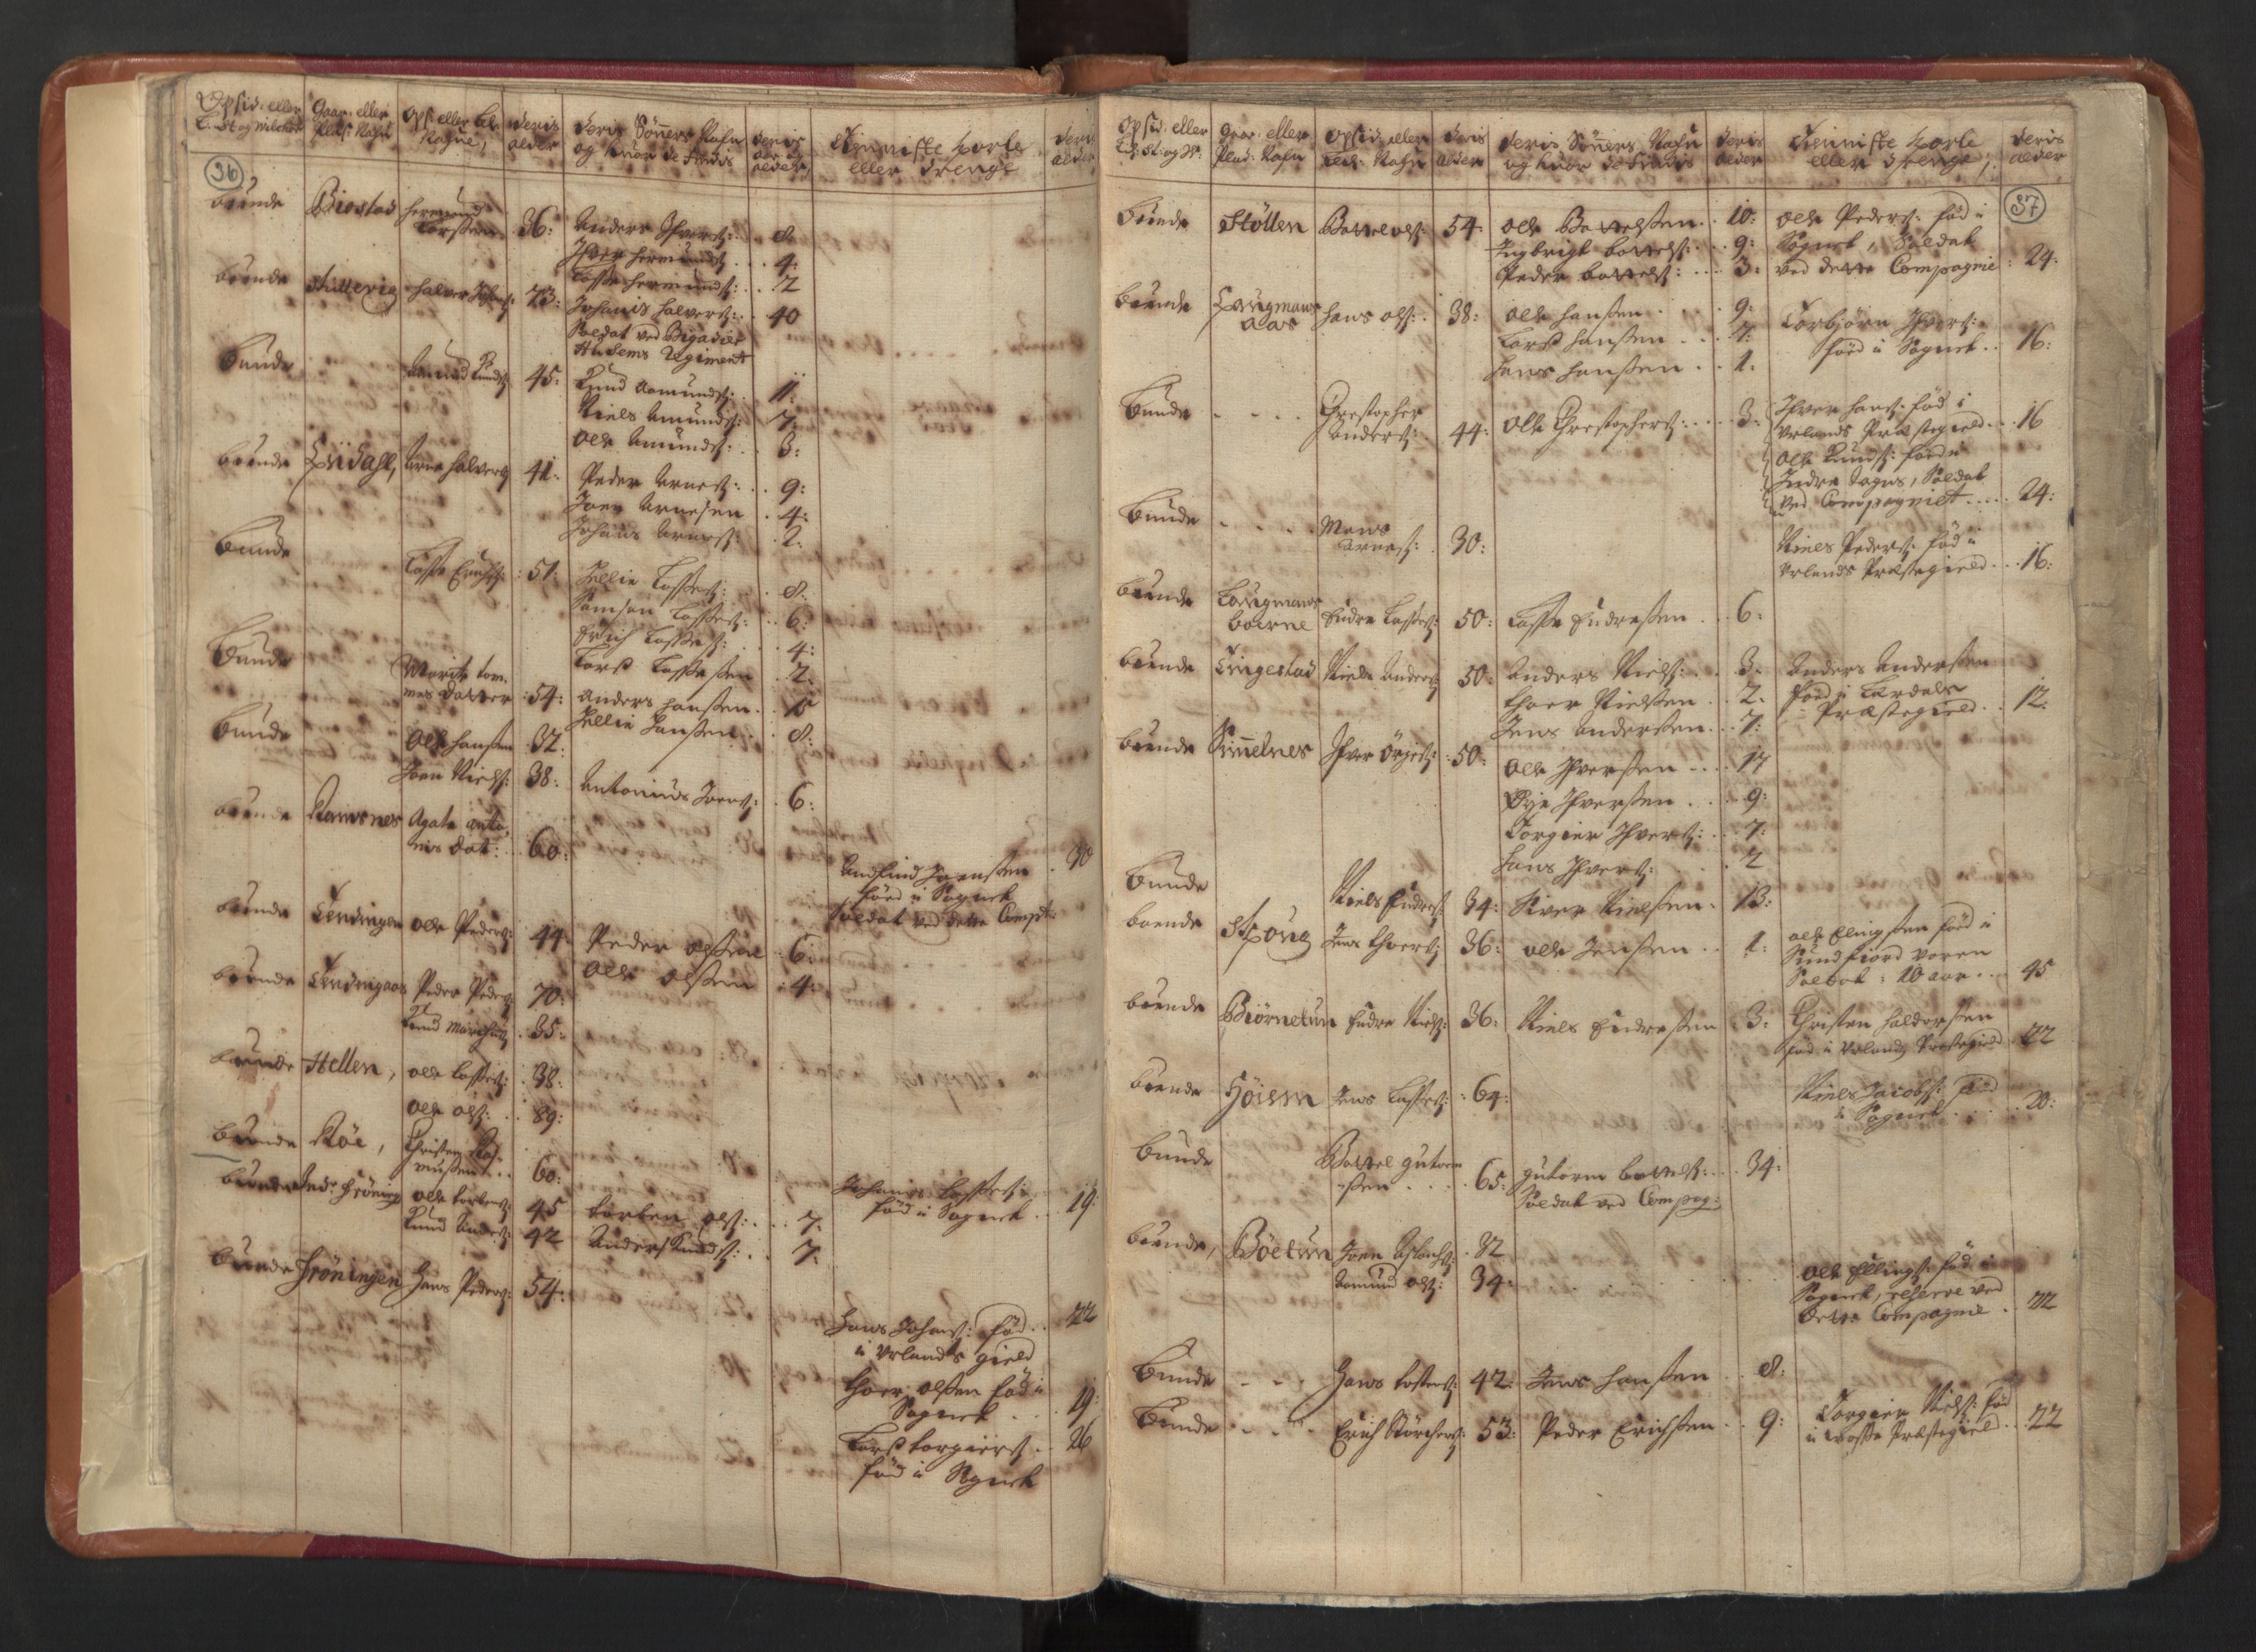 RA, Manntallet 1701, nr. 8: Ytre Sogn fogderi og Indre Sogn fogderi, 1701, s. 36-37